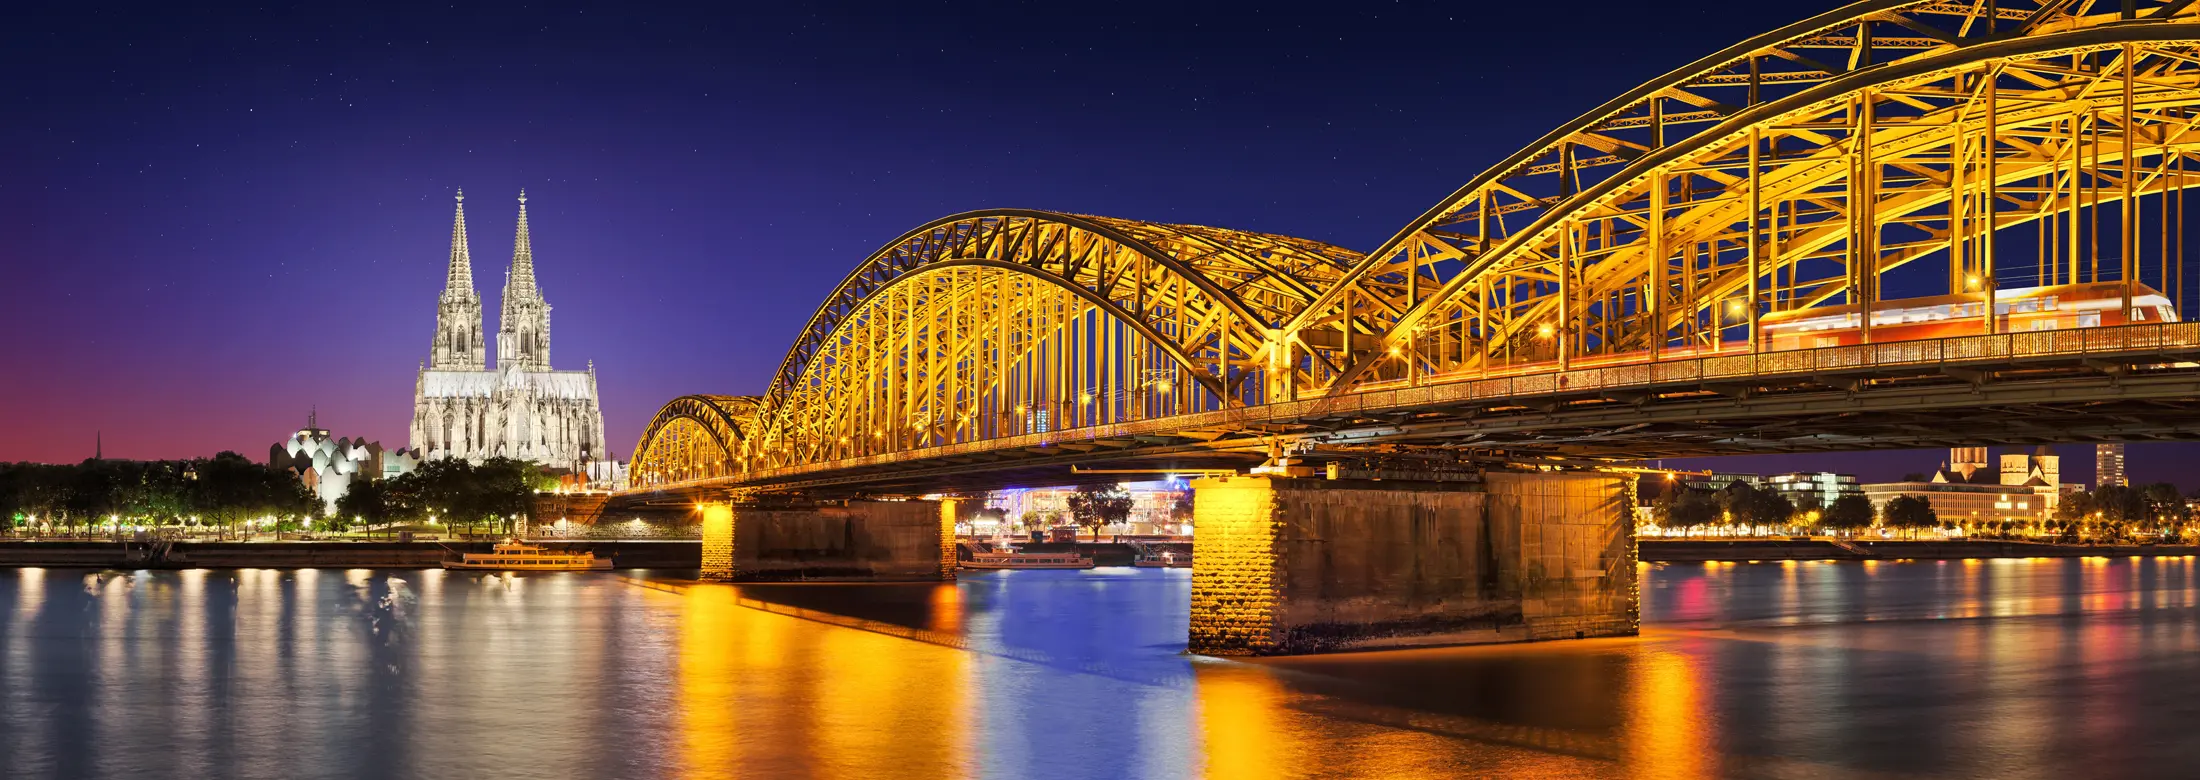 Köln bei Nacht, mit der Hohenzollernbrücke im Vordergrund und dem beleuchteten Köner Dom und vielen Immobilien am Rheinufer im Hintergrund